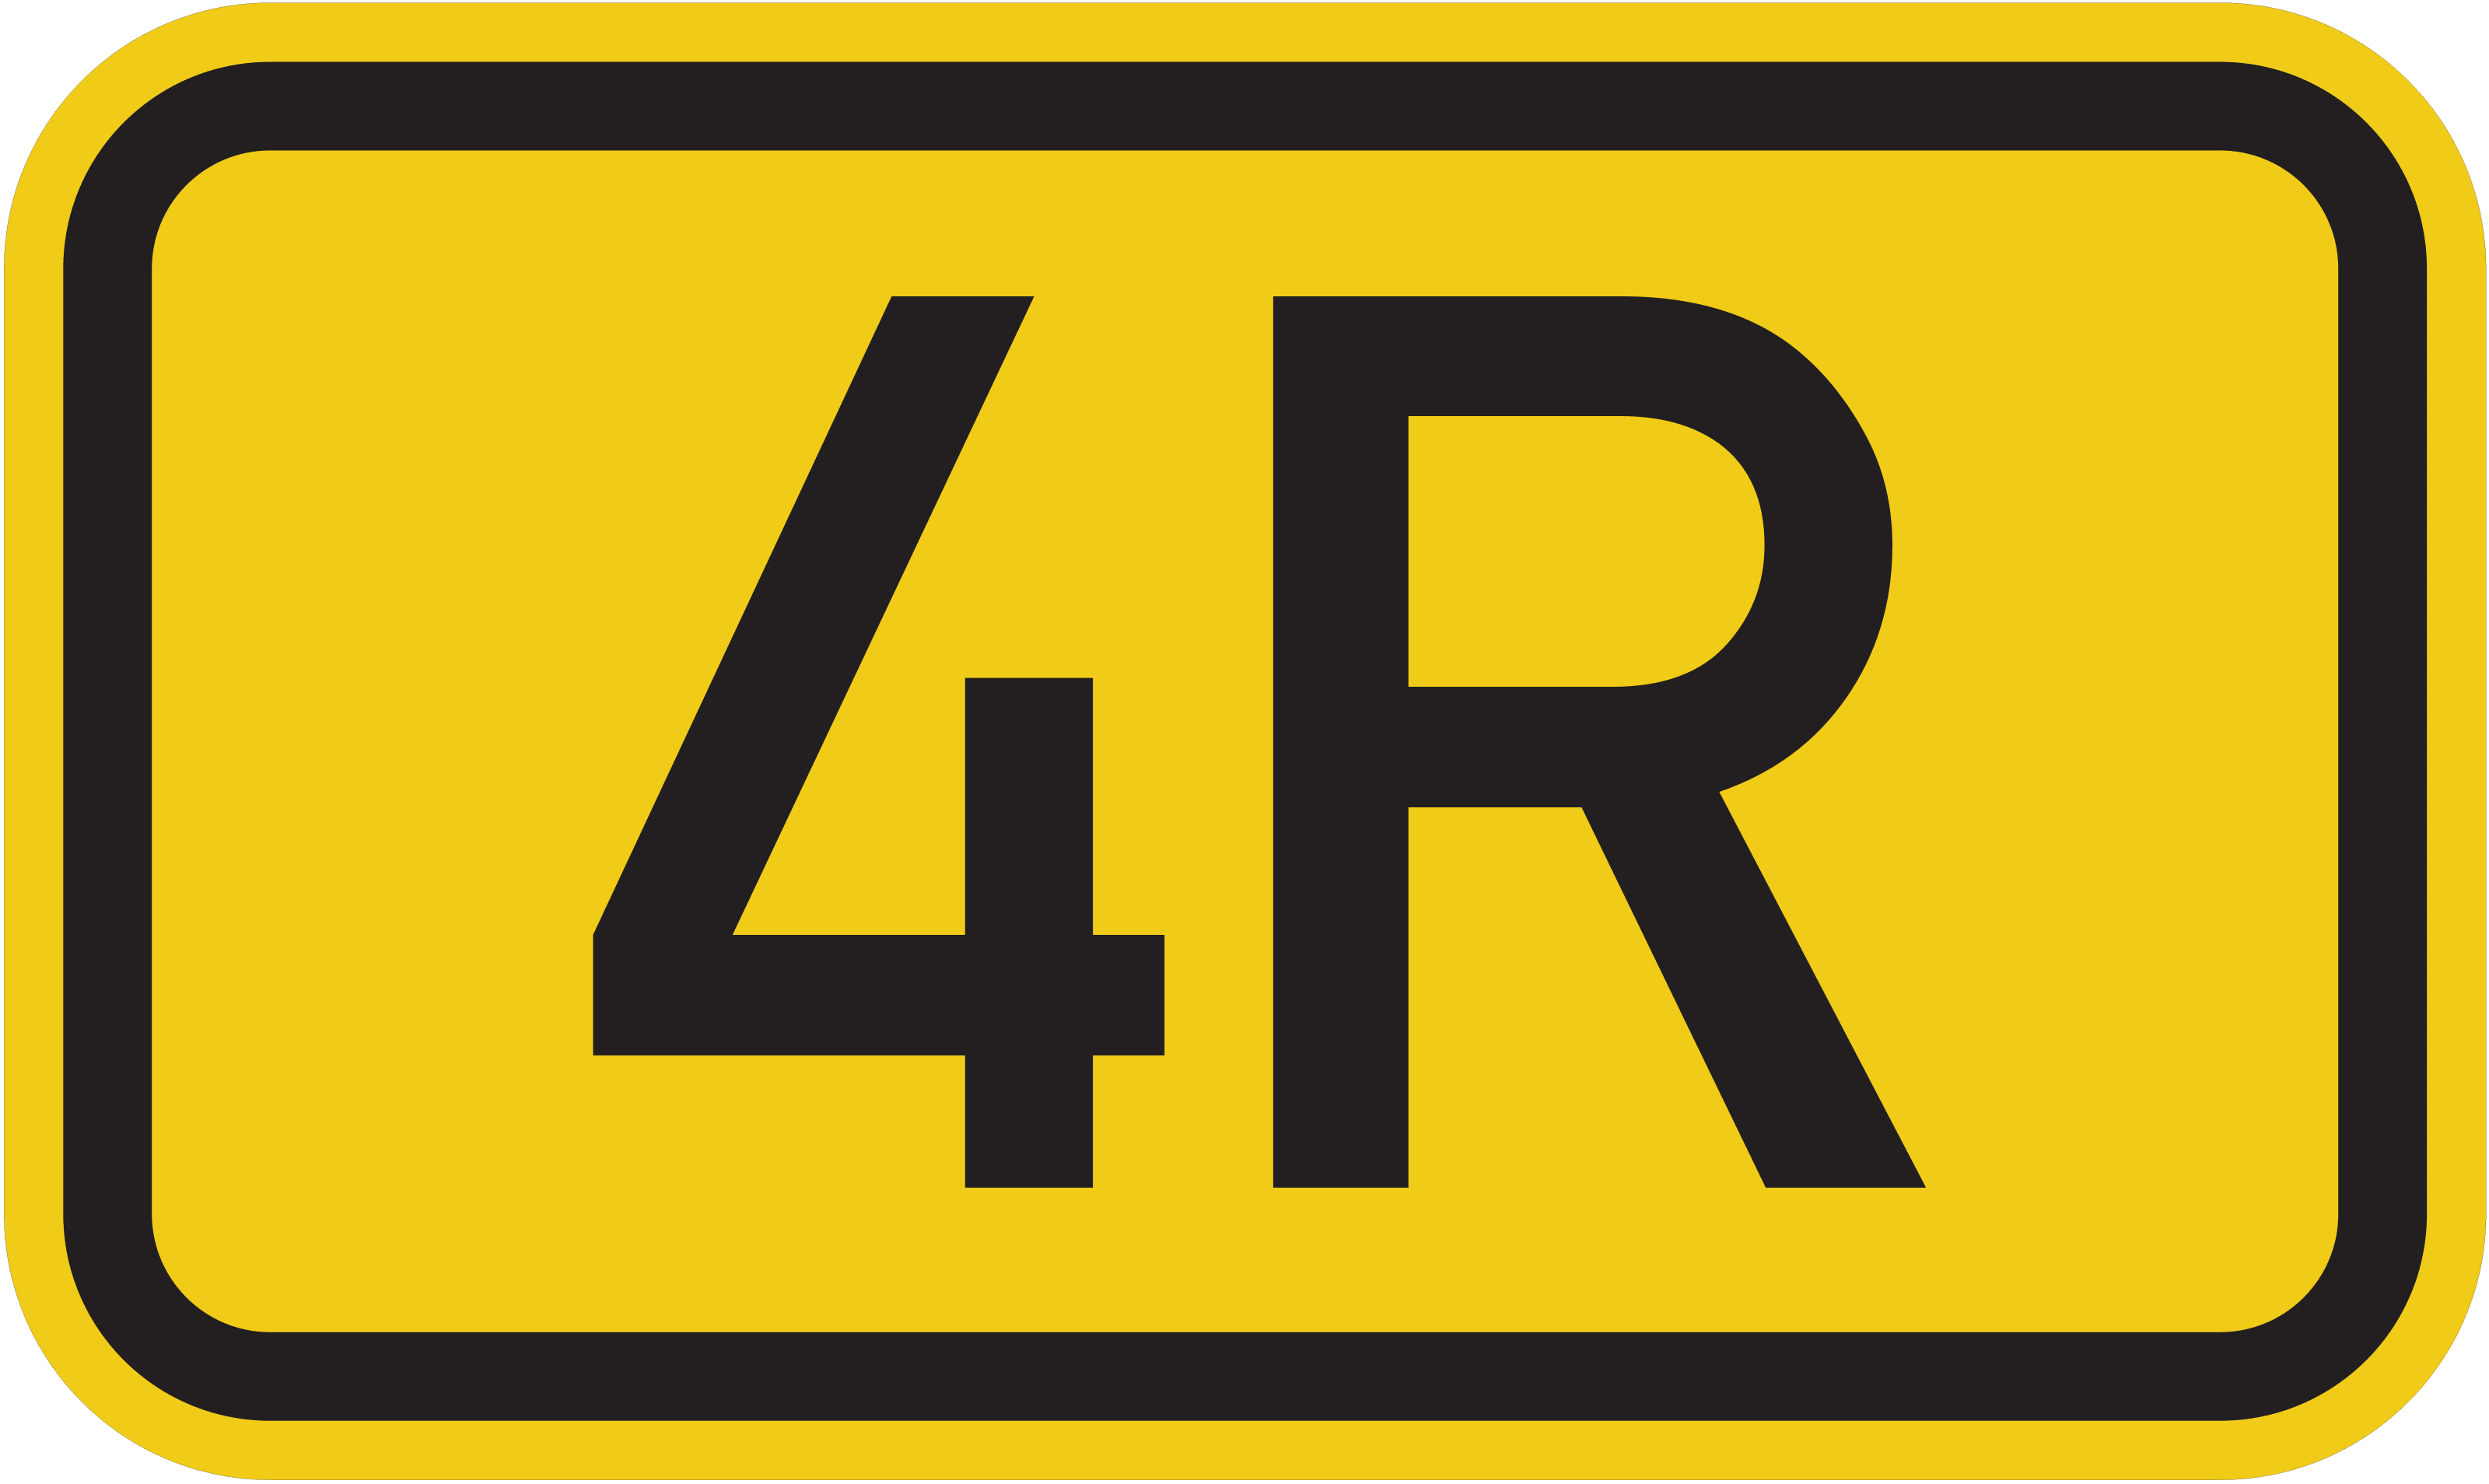 Bundesstraße B 4R